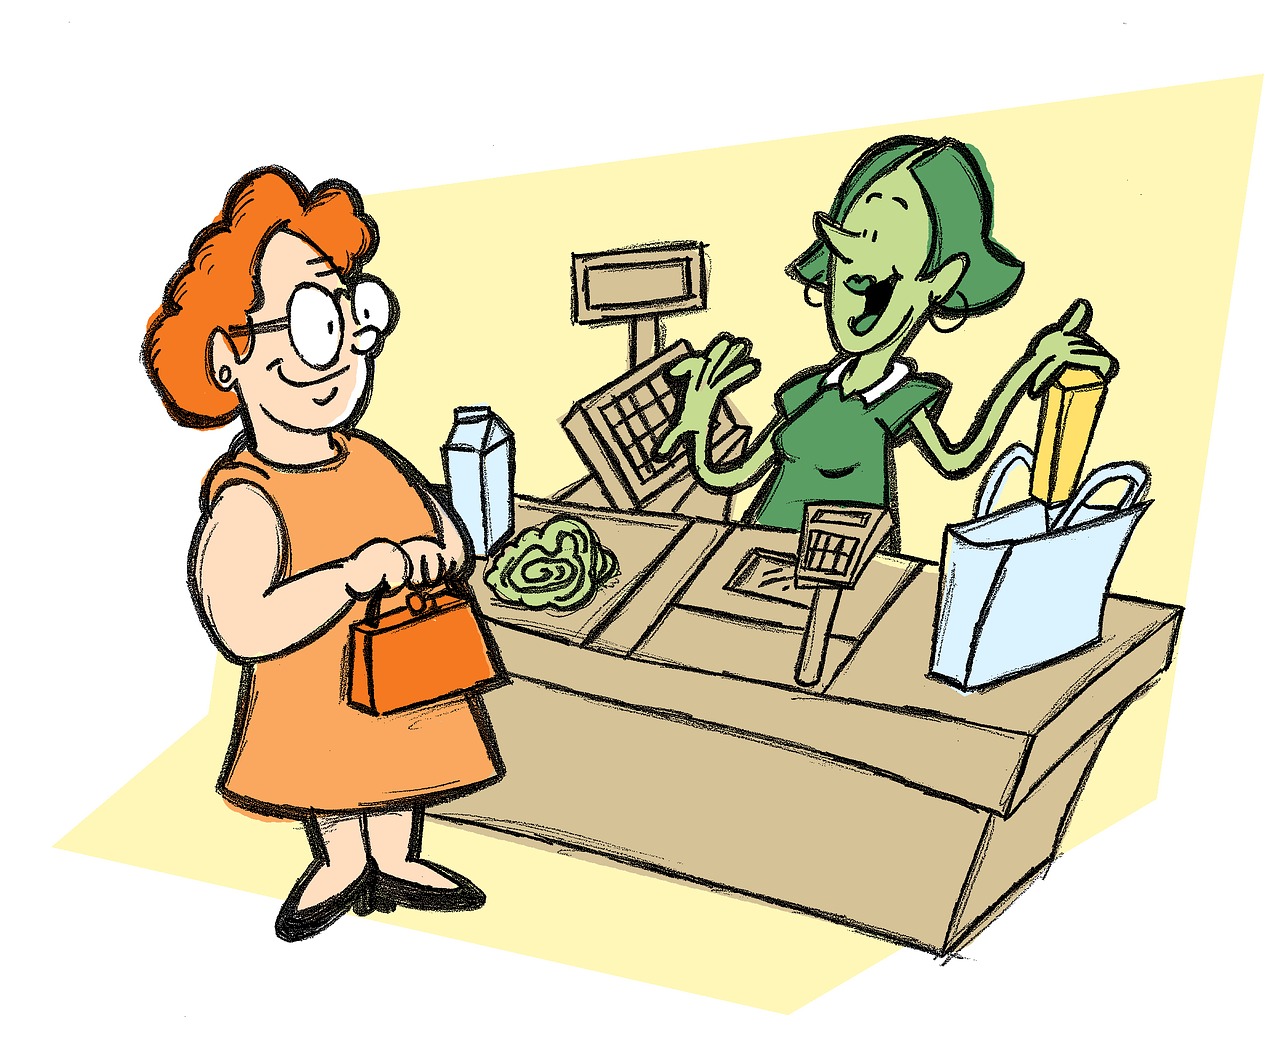 Ein Cartoon: eine Frau steht an der Kasse, hier: Häufige Fragen zu den Ladenöffnungszeiten